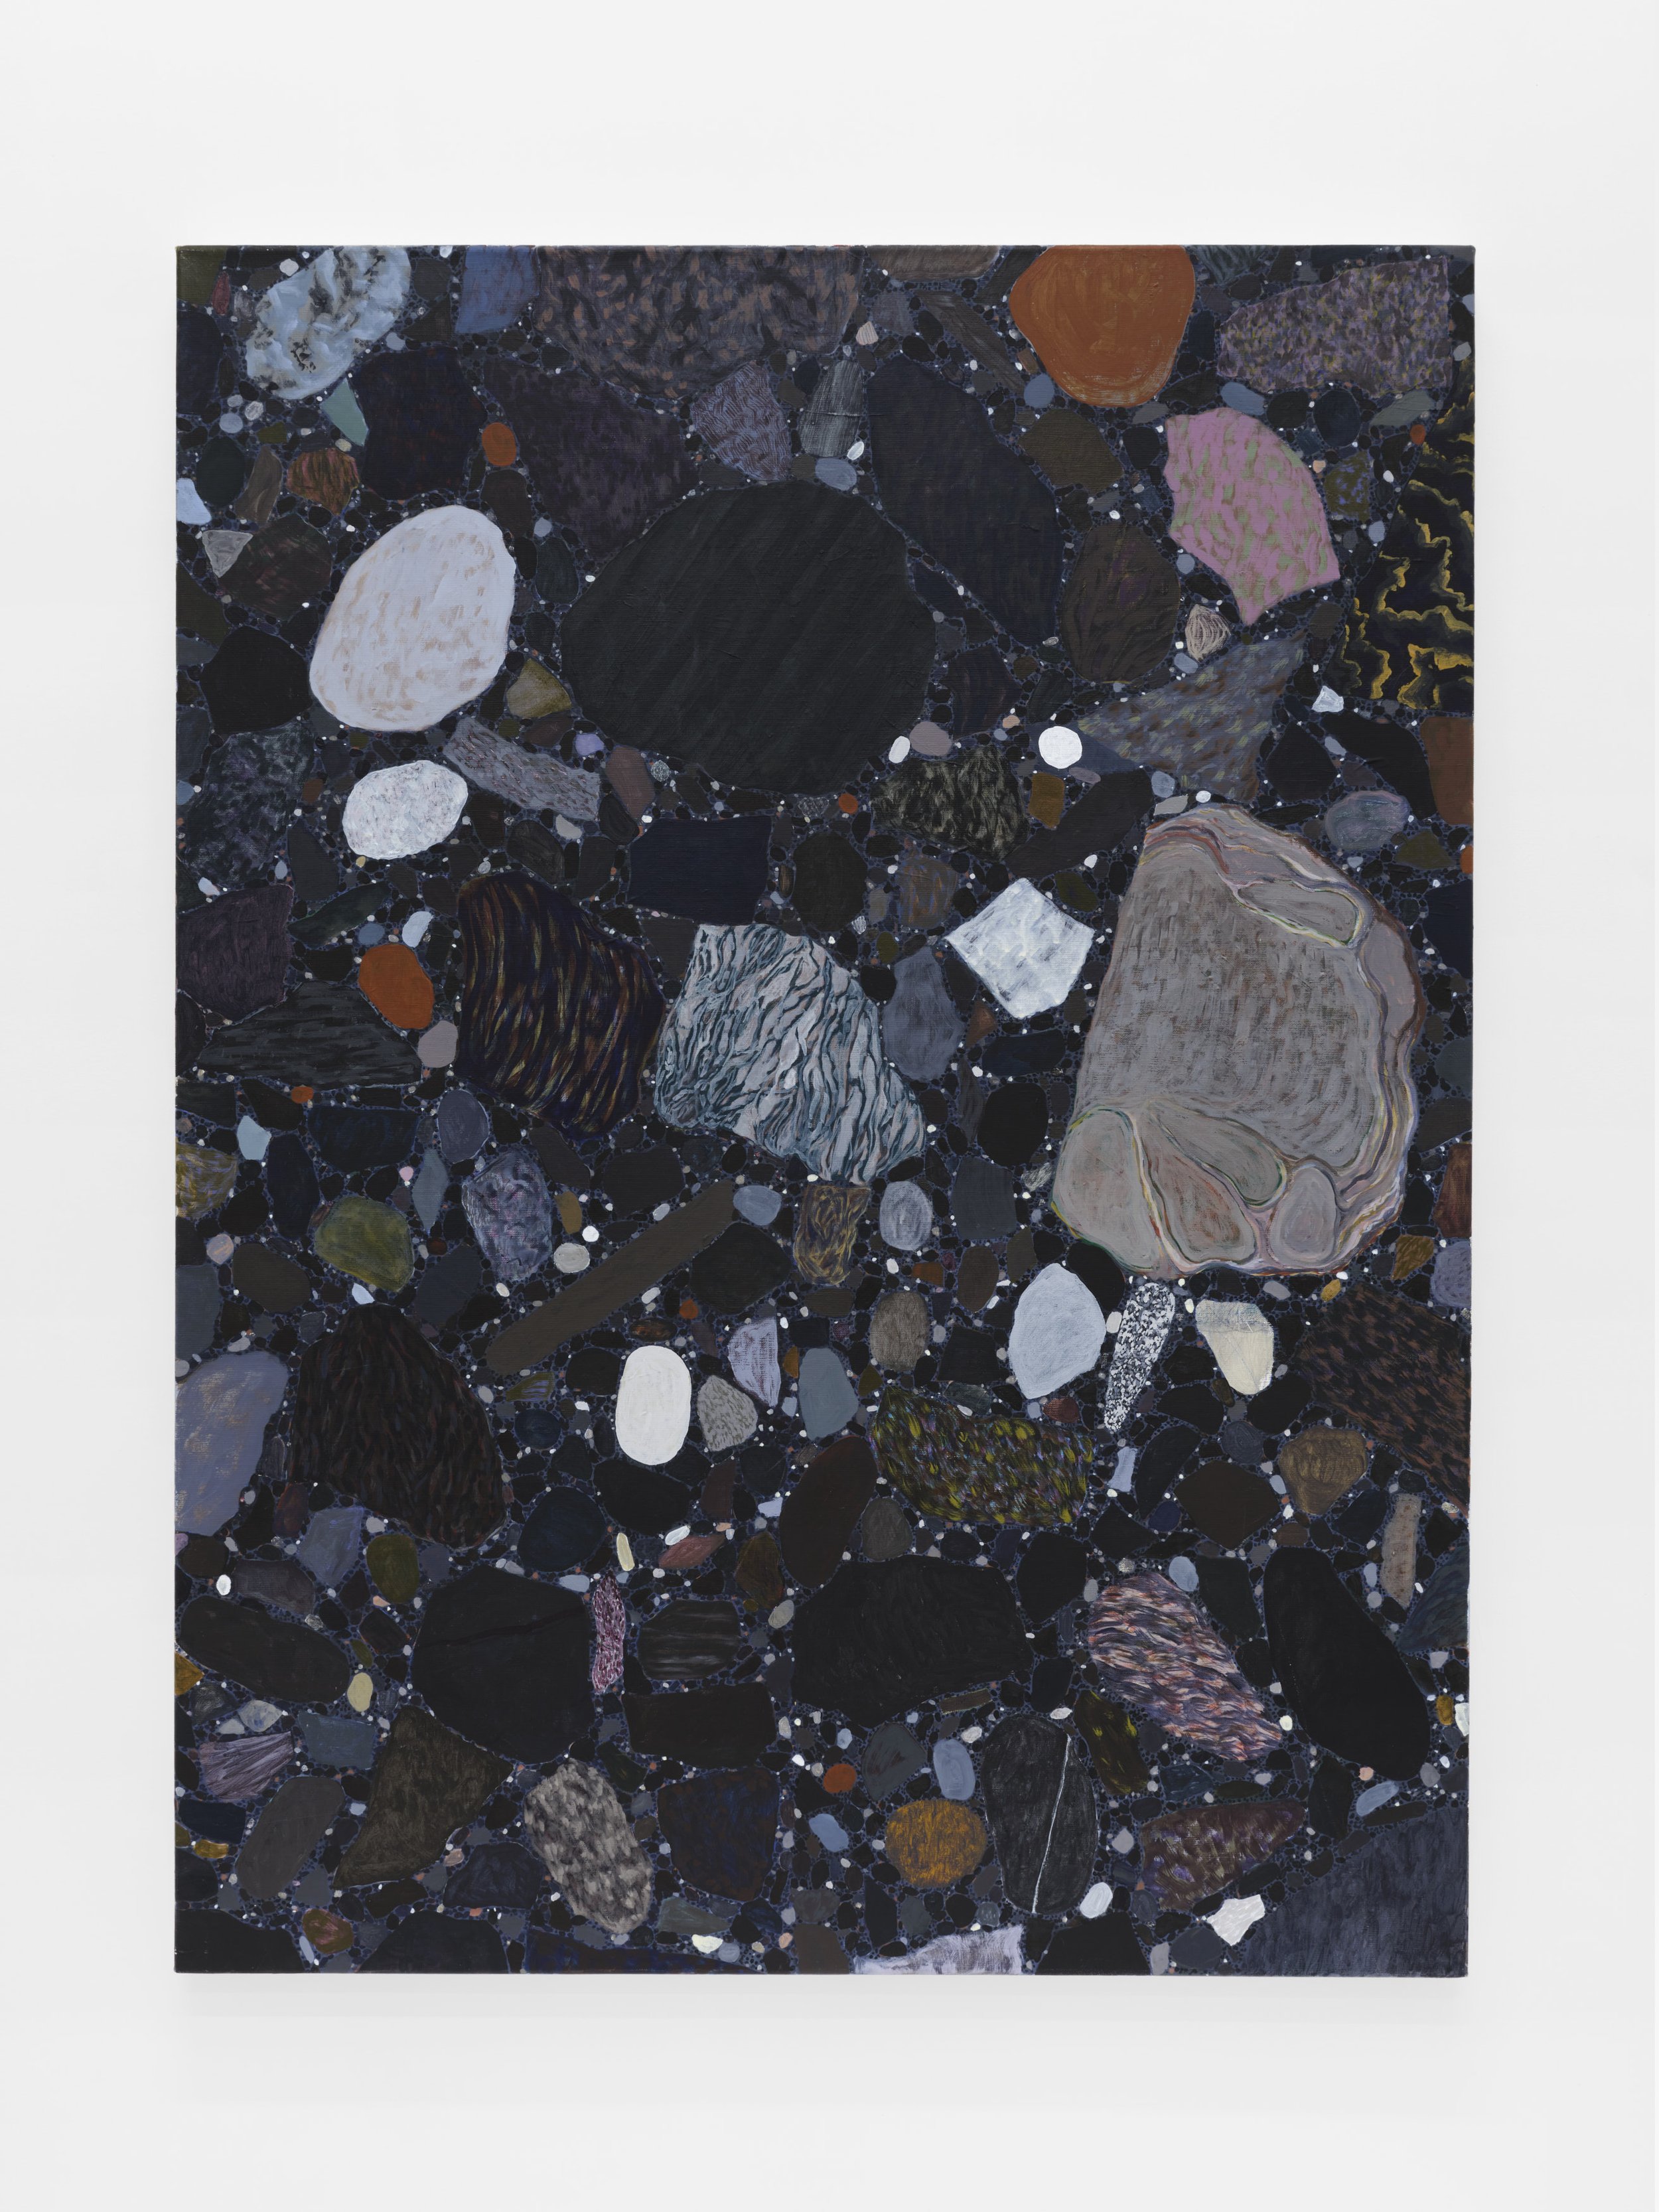   Aggregate 5,  2019  Acyrlic on Canvas  48 x 36 in. (121.9 x 91.4 cm) 